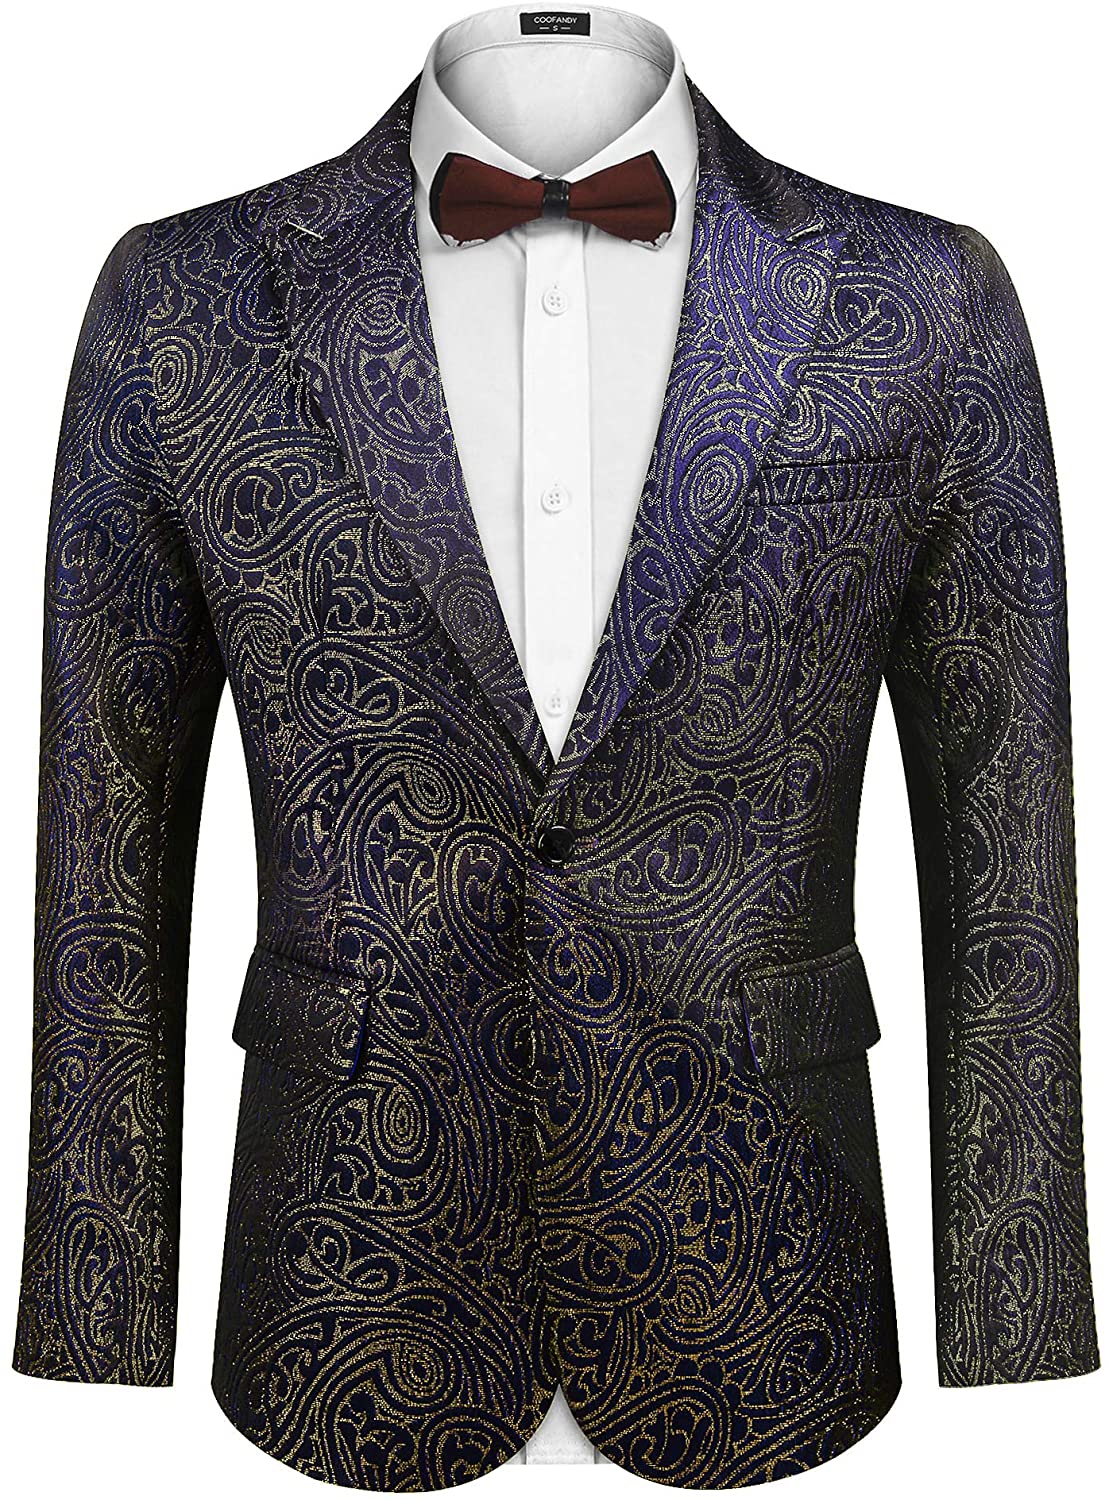 Coofandy Men S Sequin Blazer Suit Jacket Slim Fit One Button Fashion